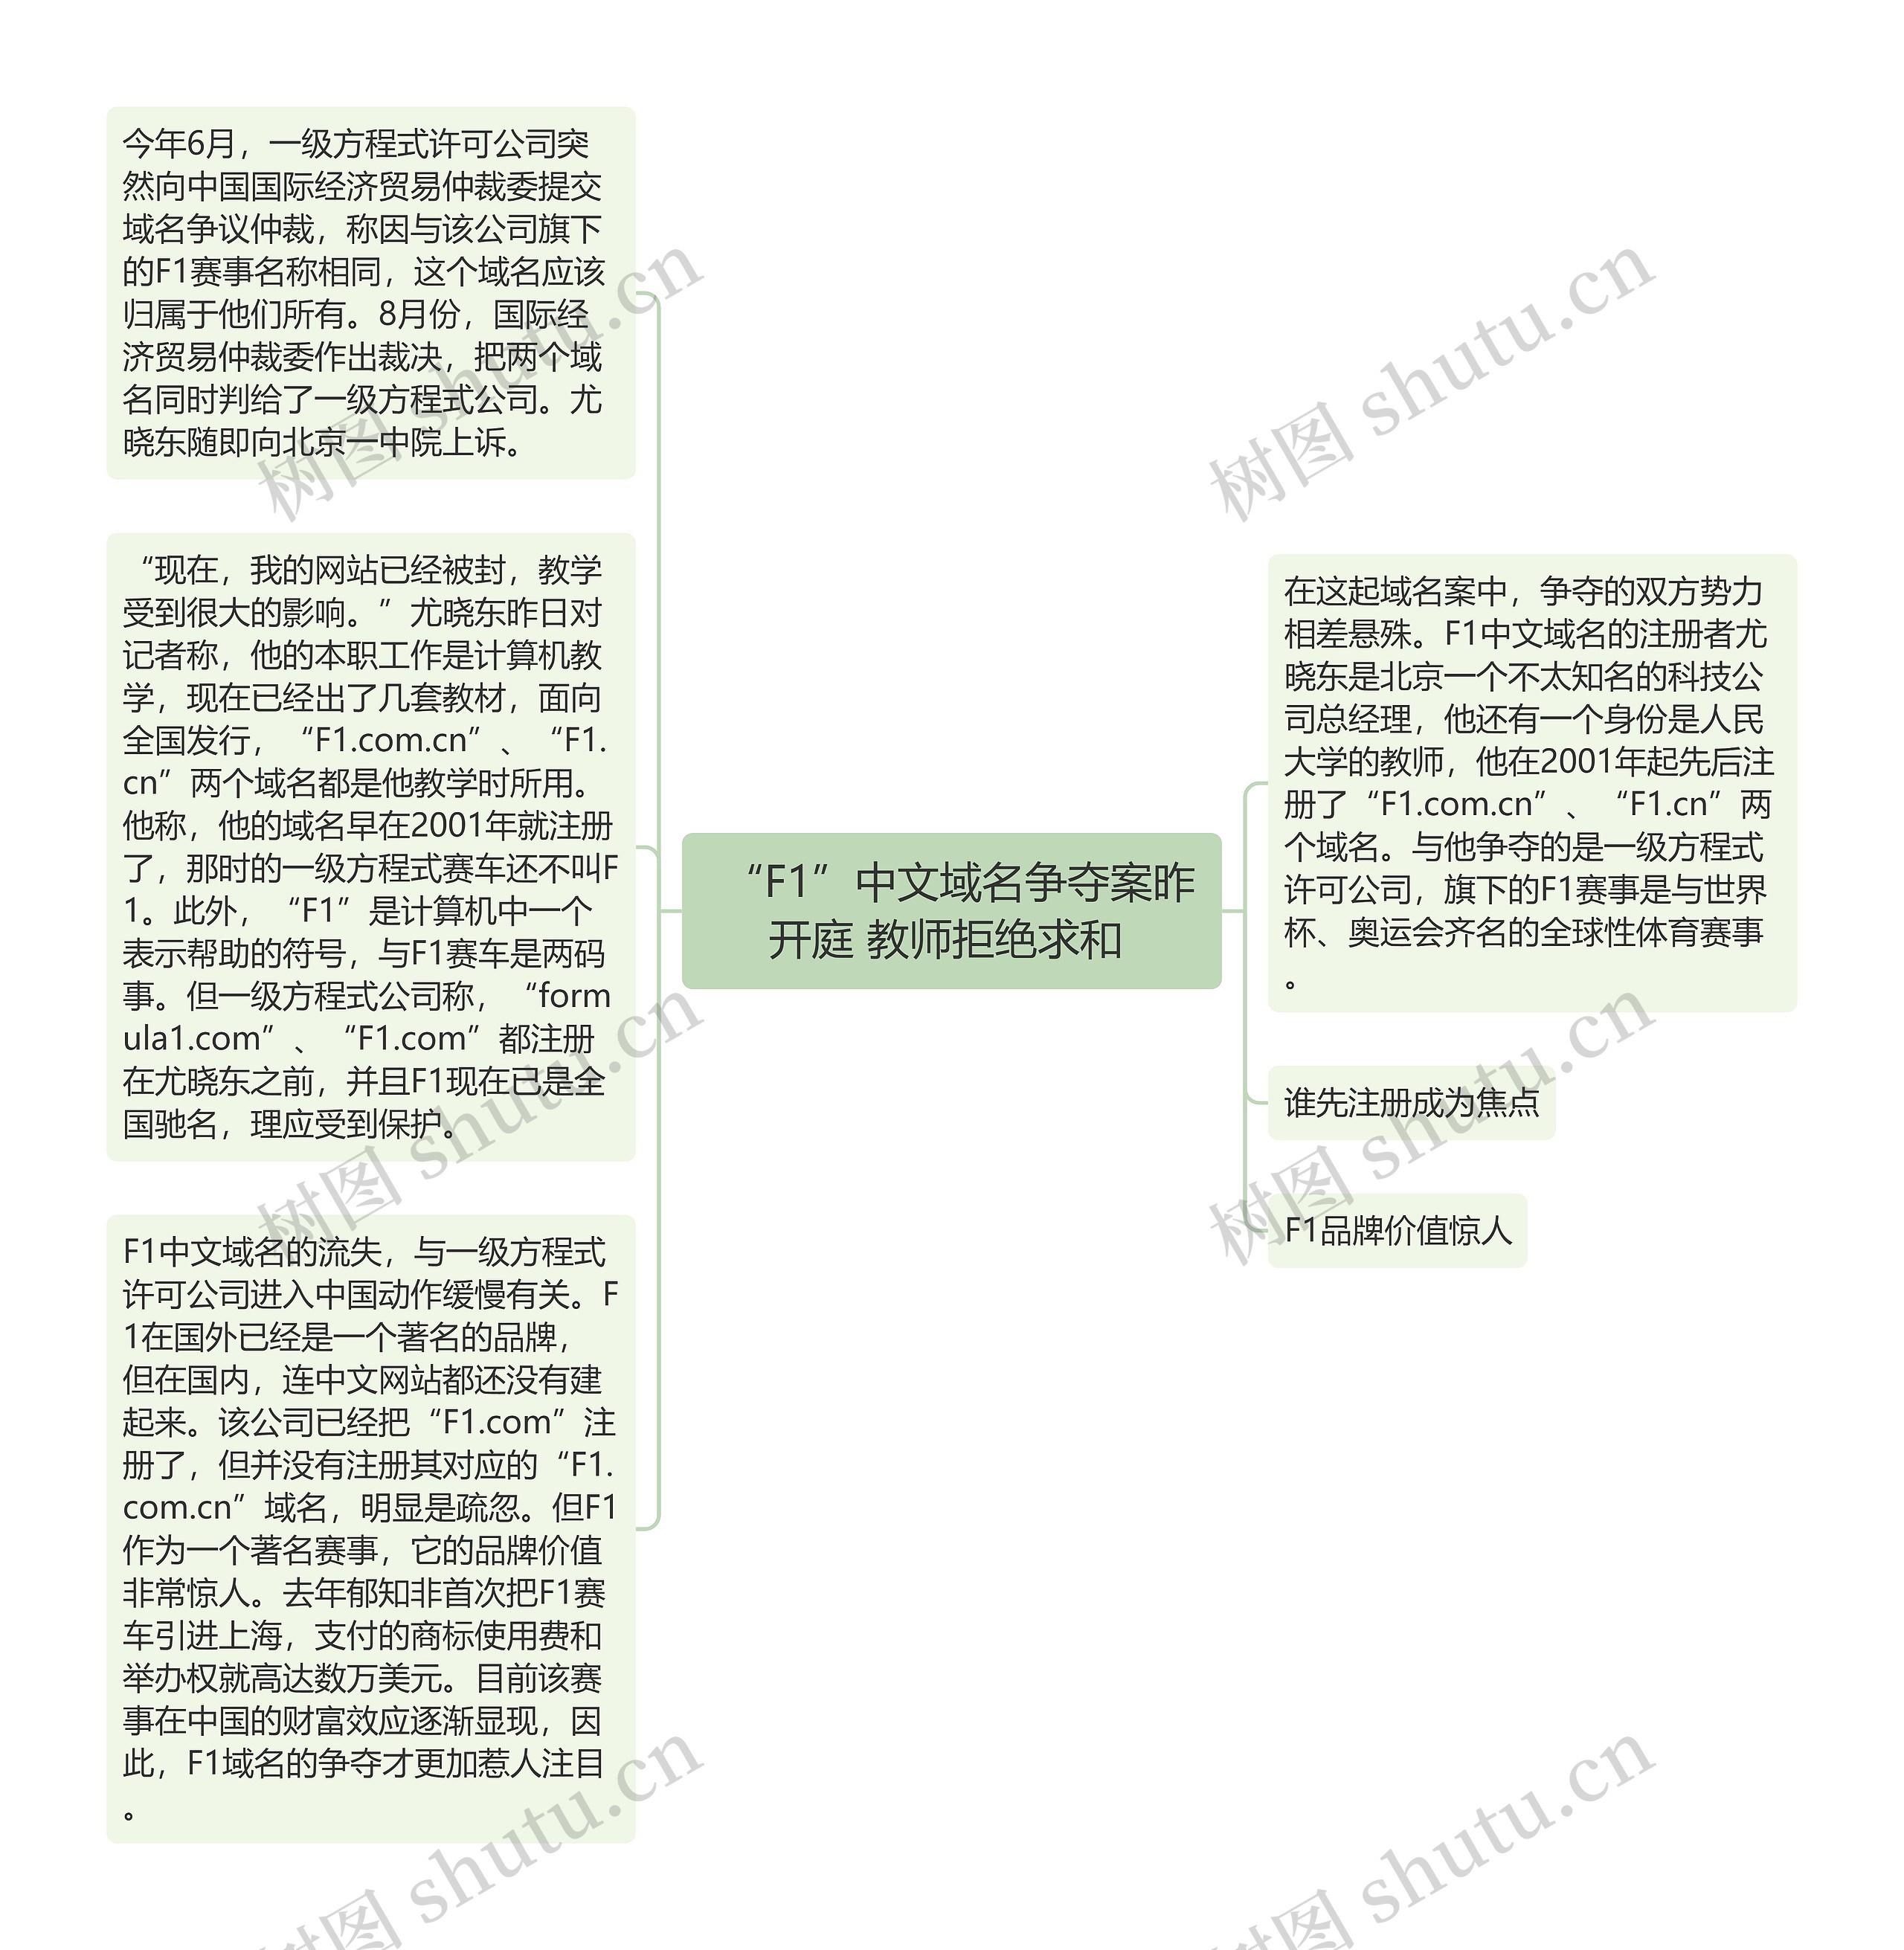  “F1”中文域名争夺案昨开庭 教师拒绝求和 思维导图